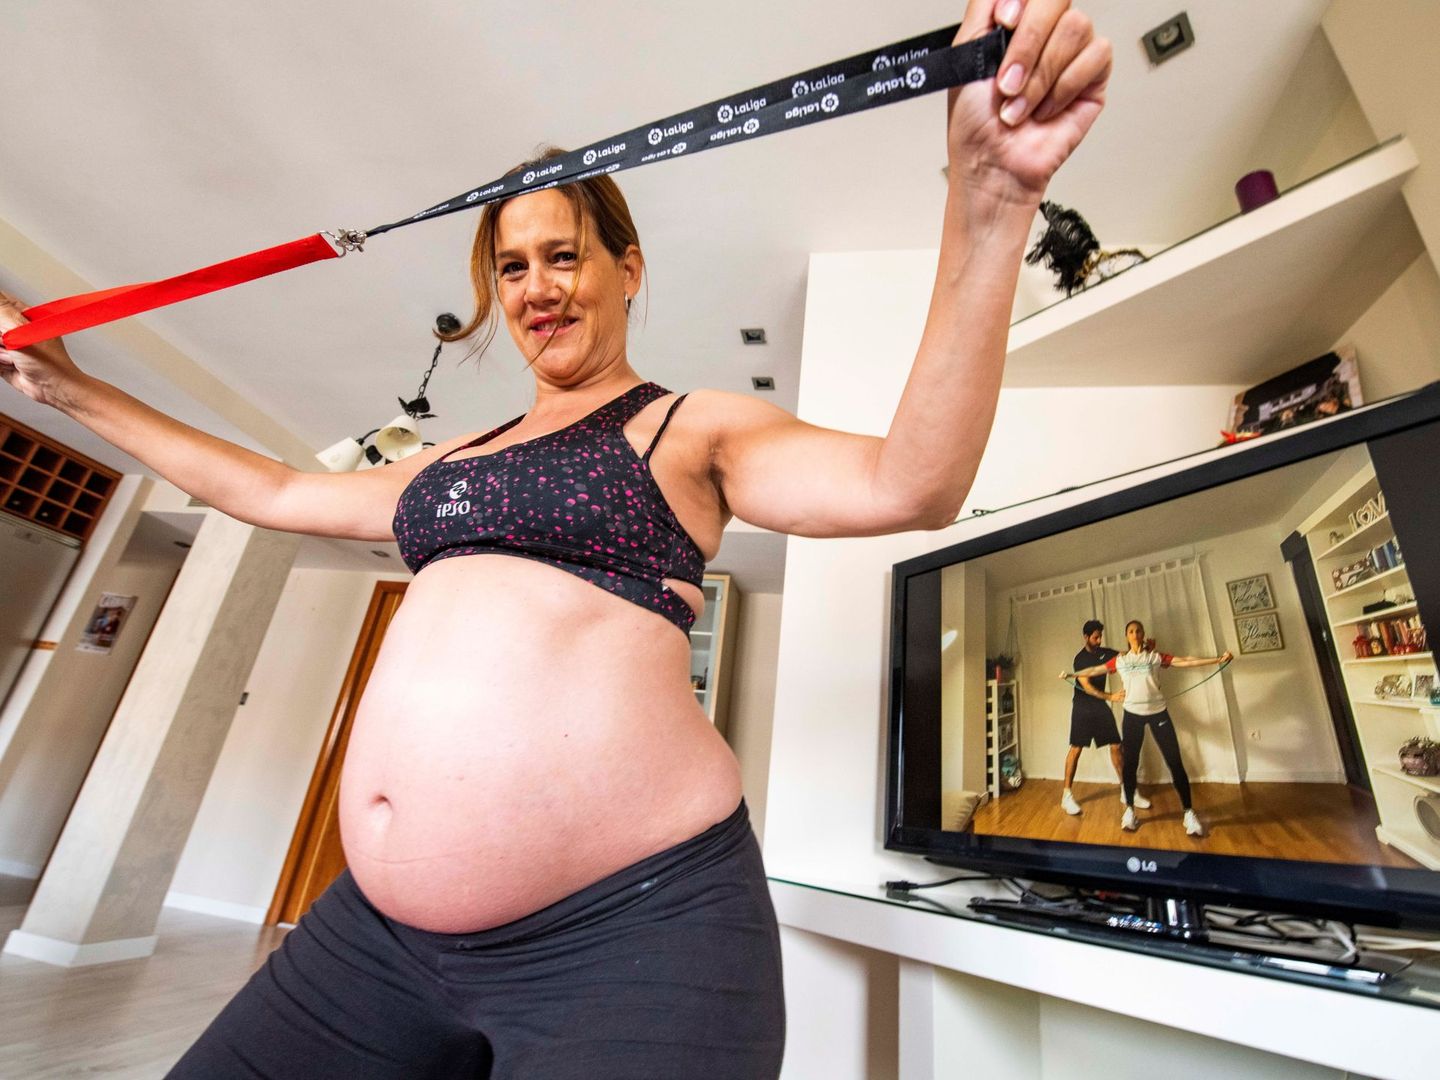 Para las embarazadas se recomiendan actividades no vigorosas, como por ejemplo ejercicios de estiramiento.